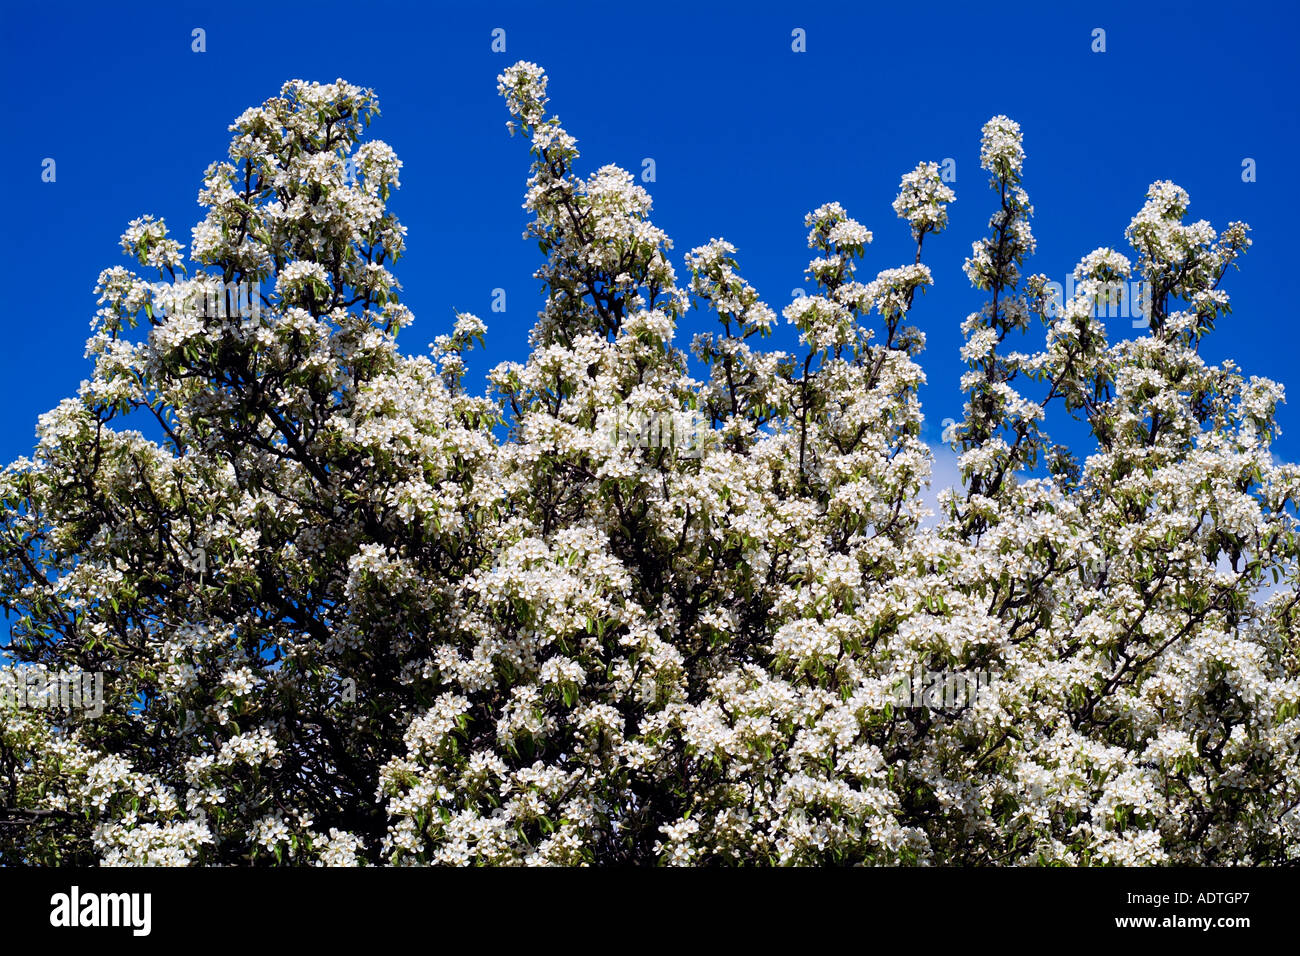 Birne Baum Blüte weiße Fülle blauen Frühlingshimmel England UK United Kingdom GB Großbritannien EU Europäische Union Europa Stockfoto